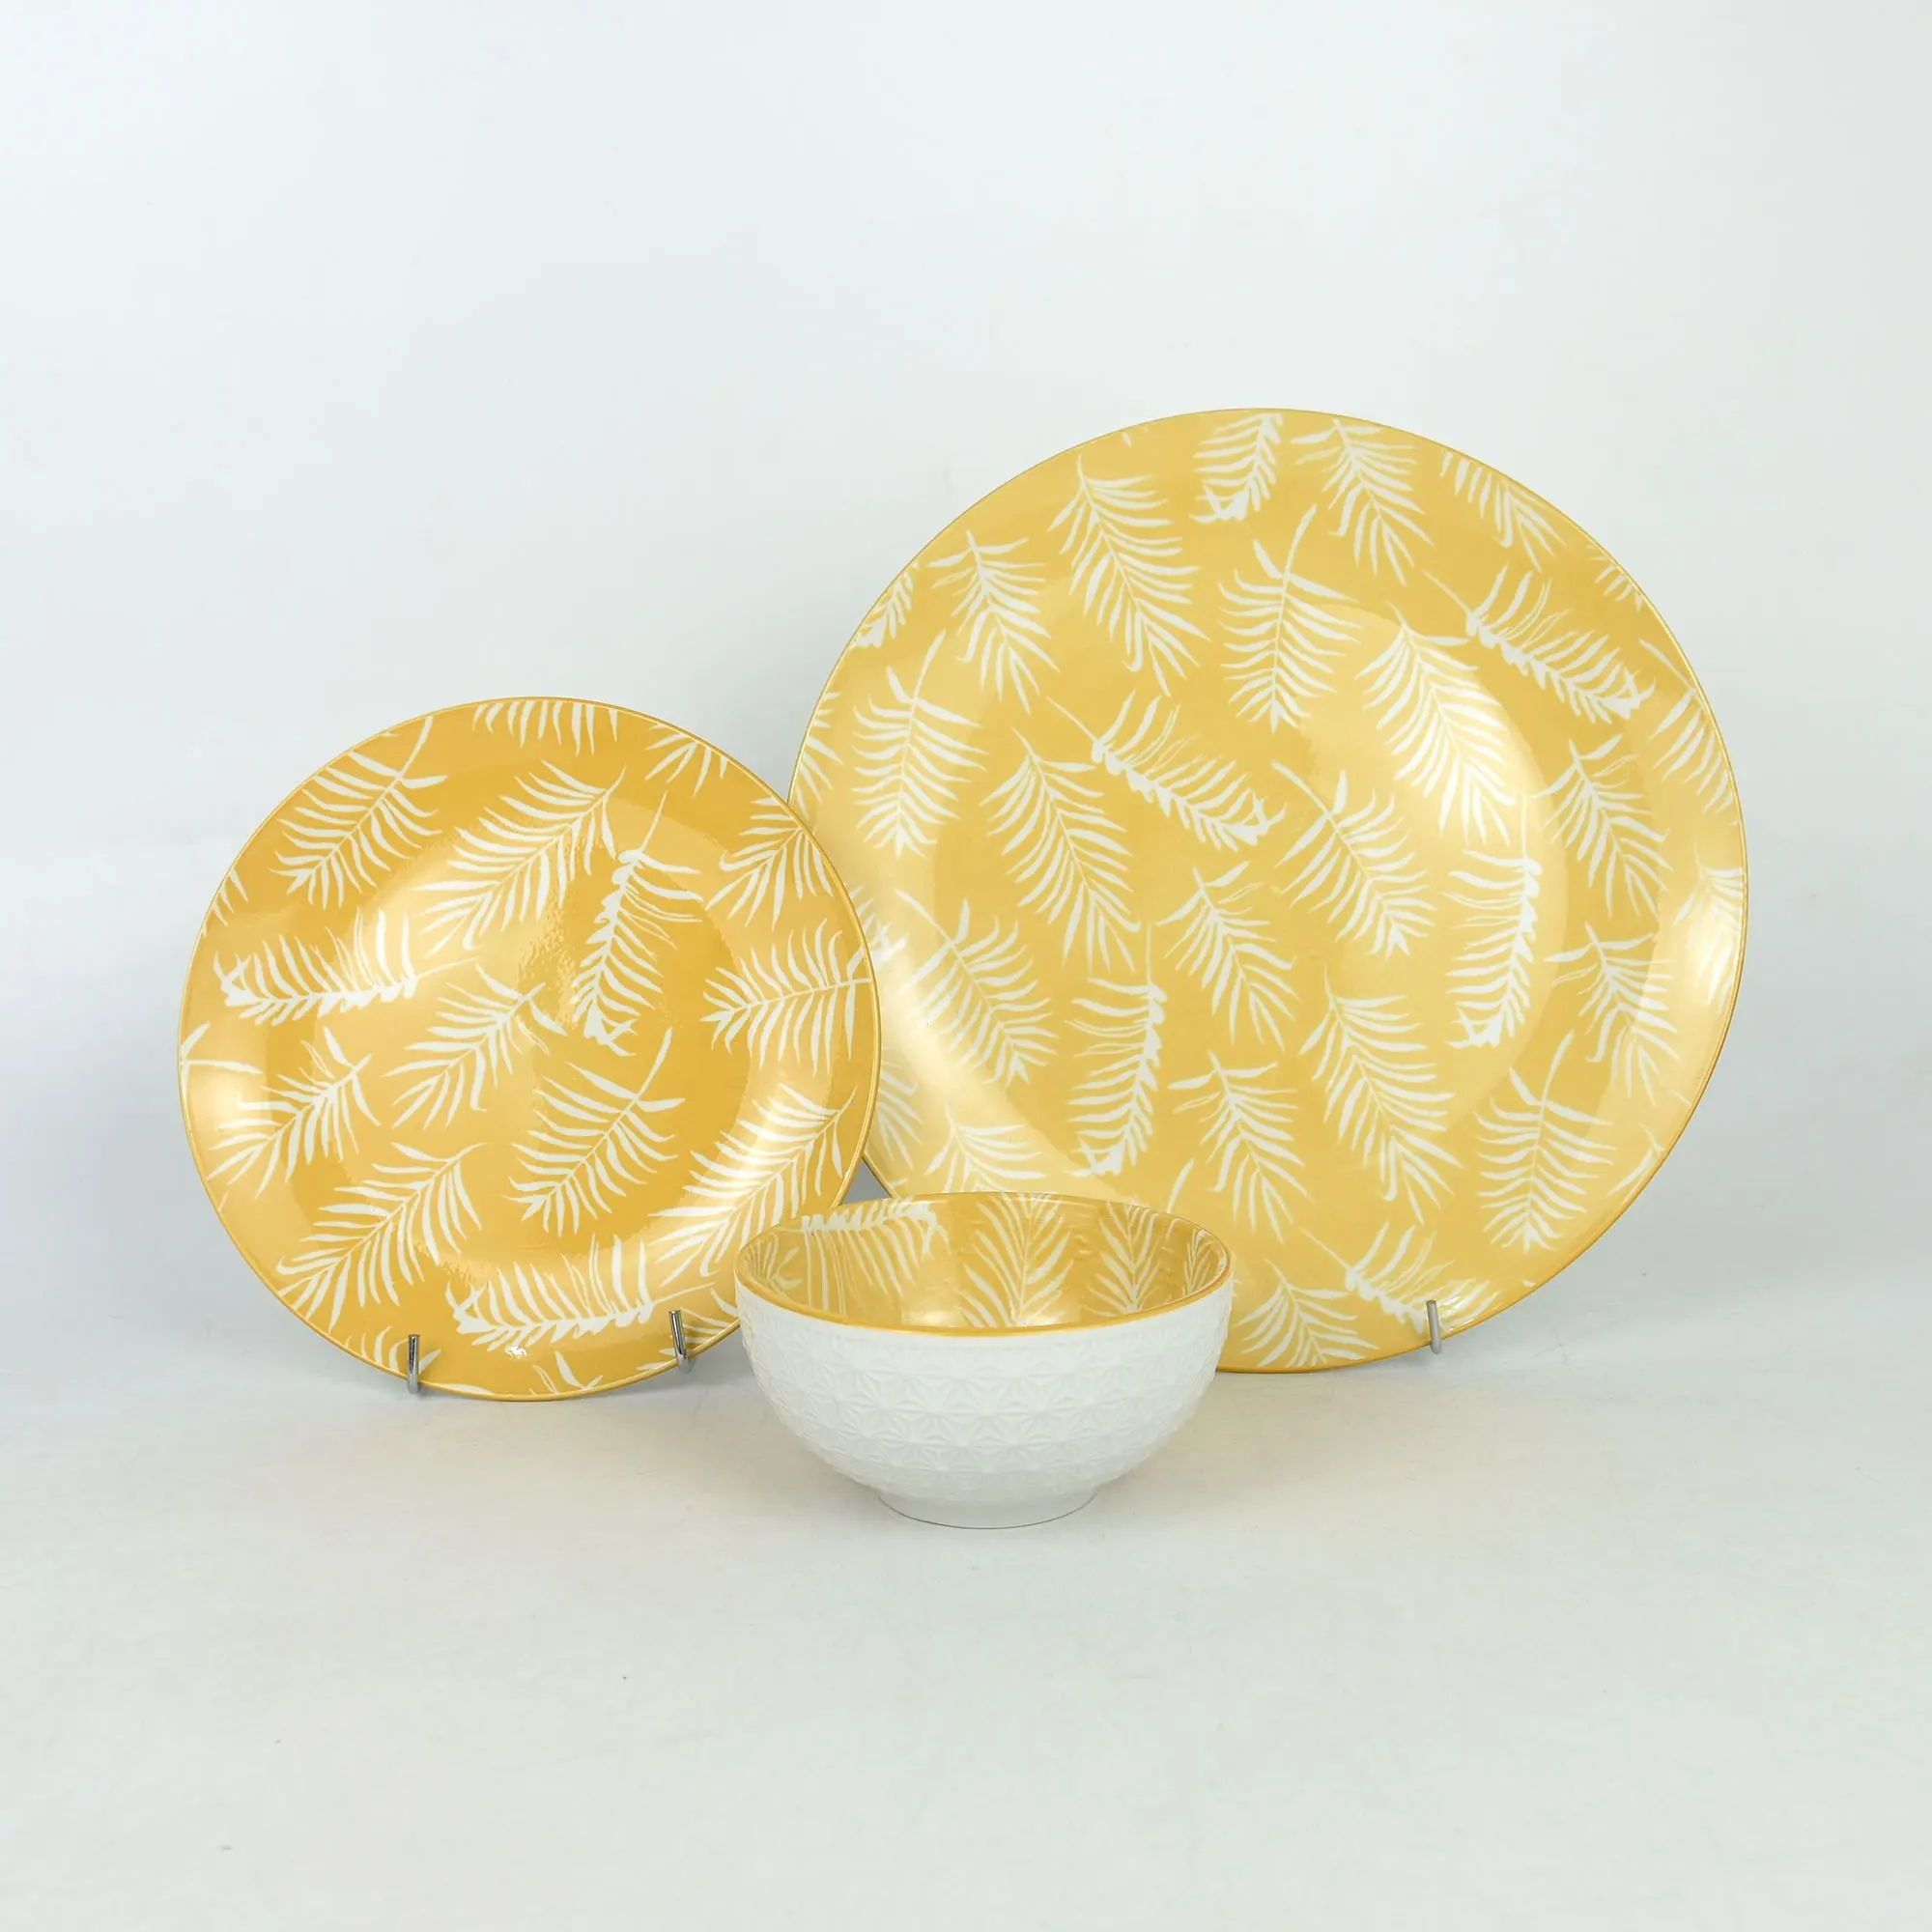 12 buah set alat makan motif bantalan porselen set piring bulat motif daun putih kuning dan mangkuk peralatan makan keramik